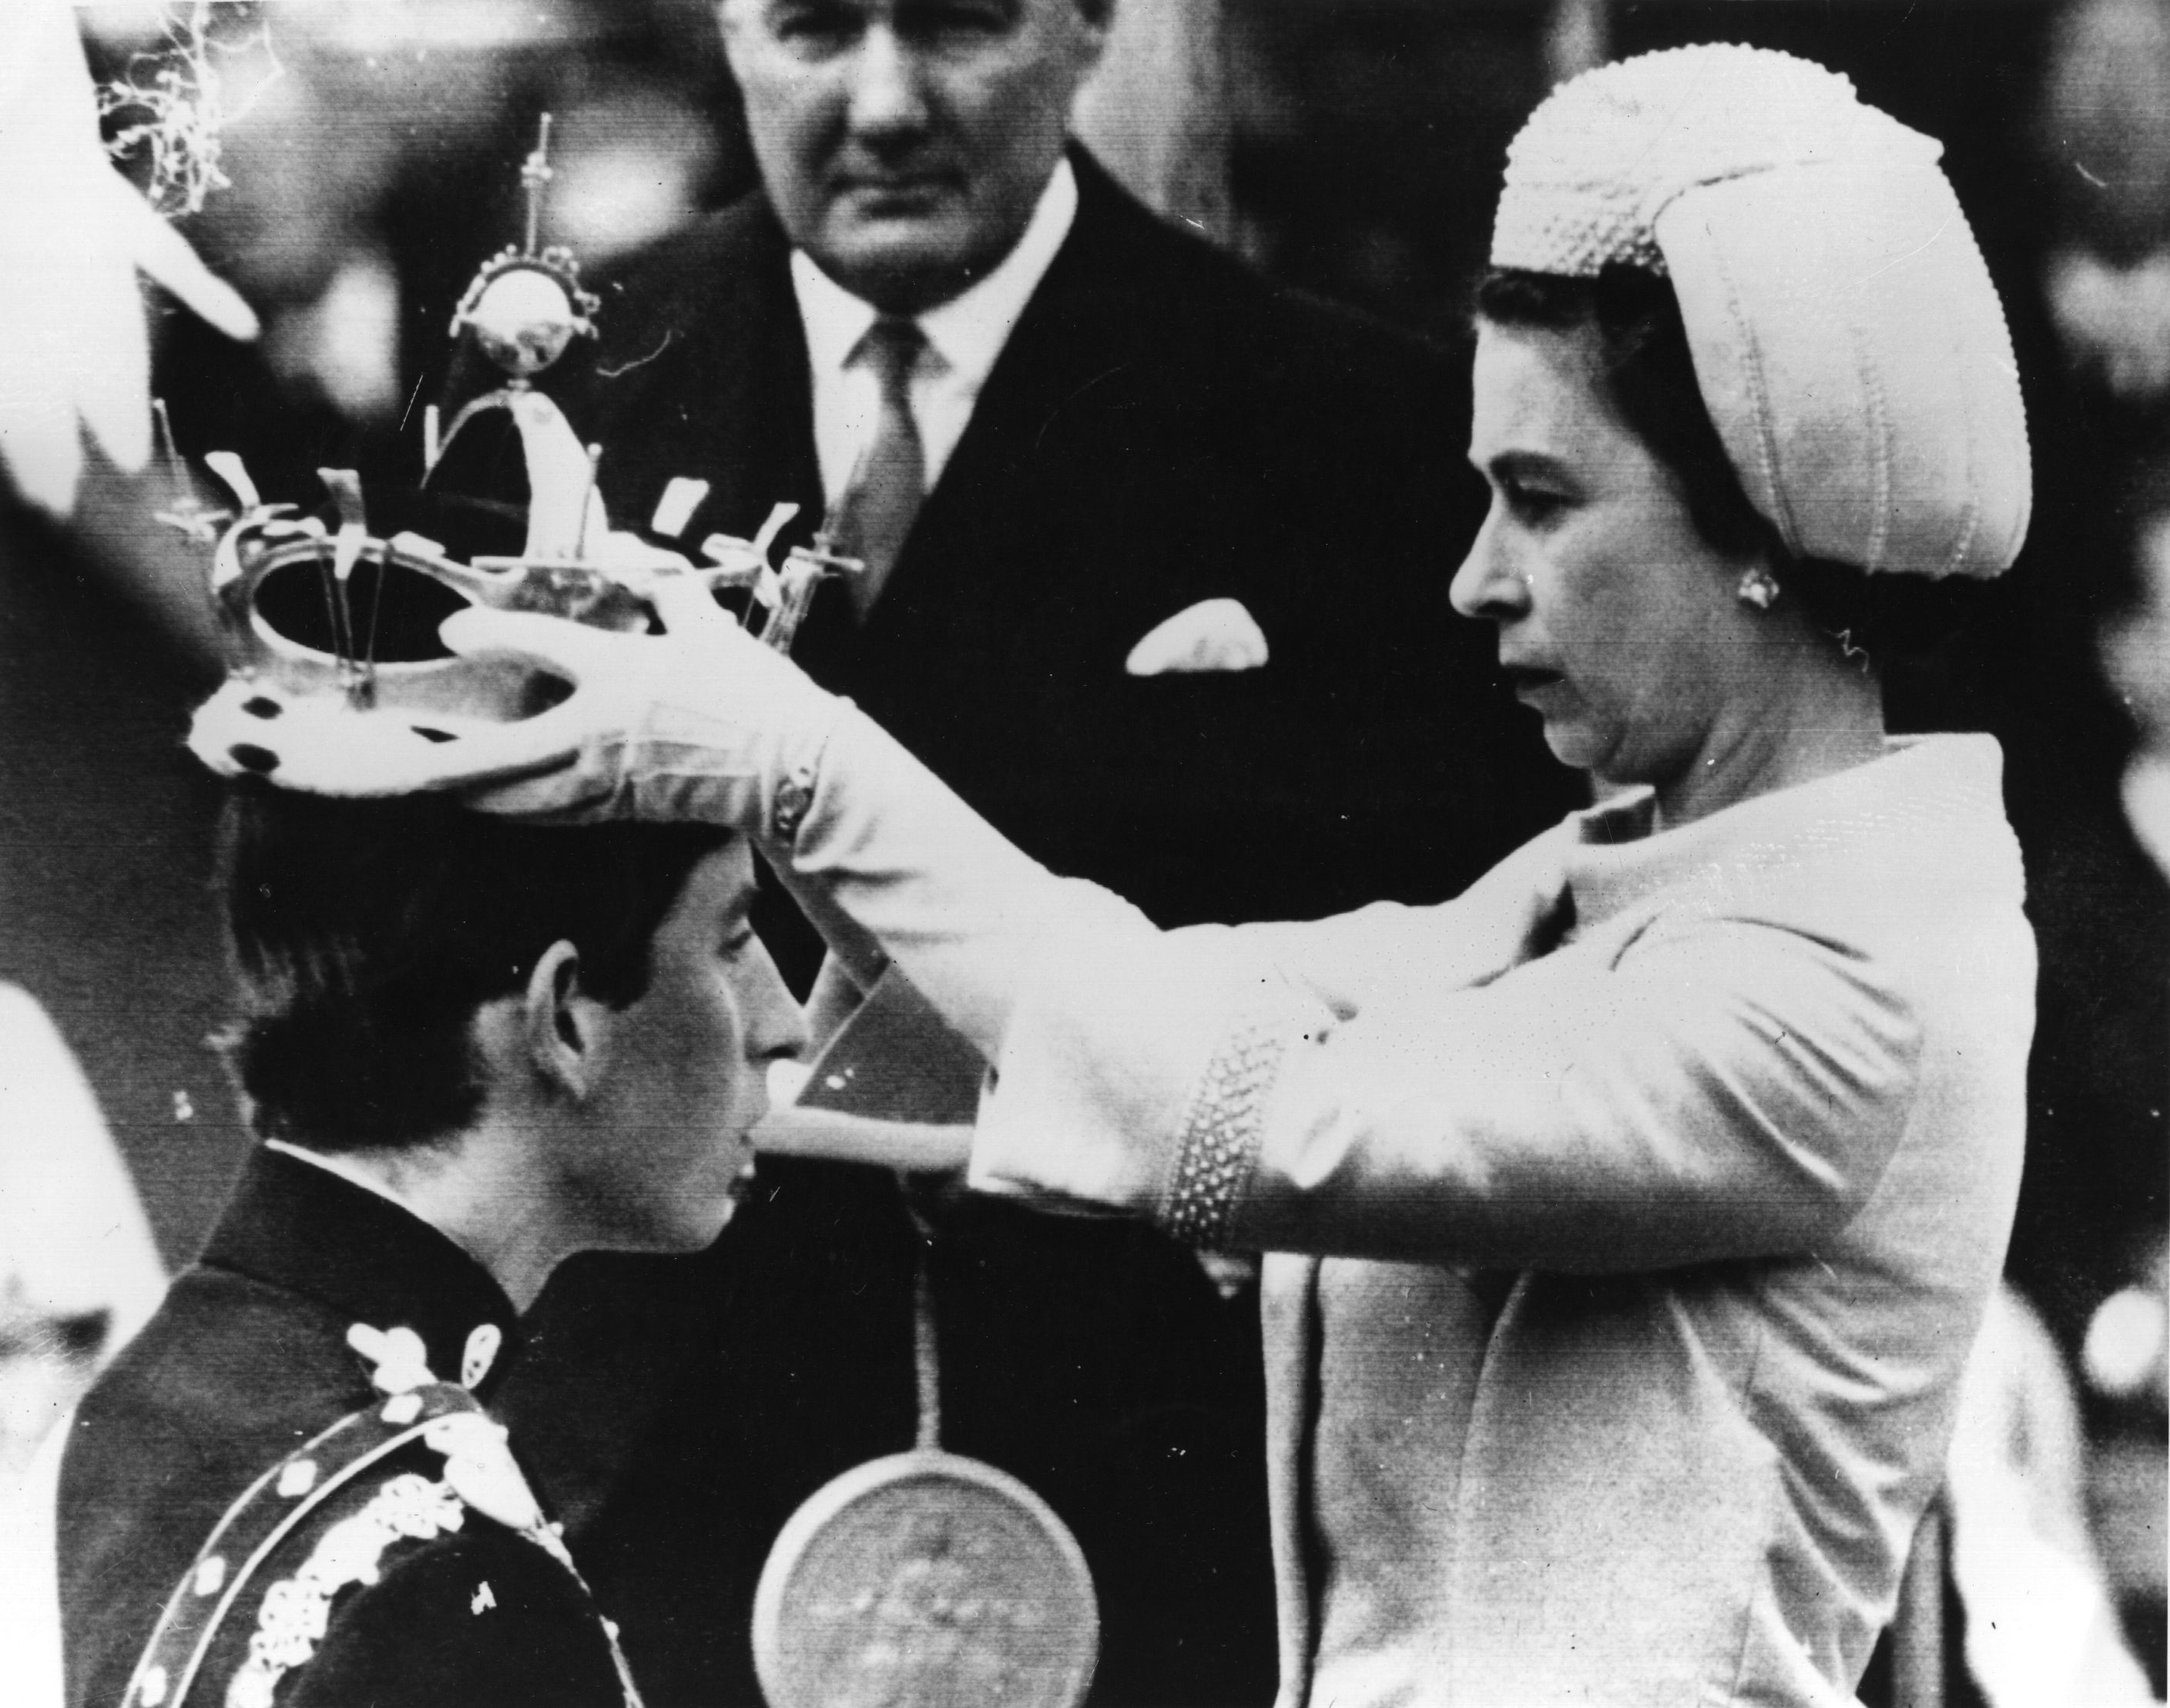 1 de julio de 1969: La Reina coloca la corona del Príncipe de Gales en la cabeza de Carlos, Príncipe de Gales, durante su ceremonia de investidura (Photo by Central Press/Getty Images)